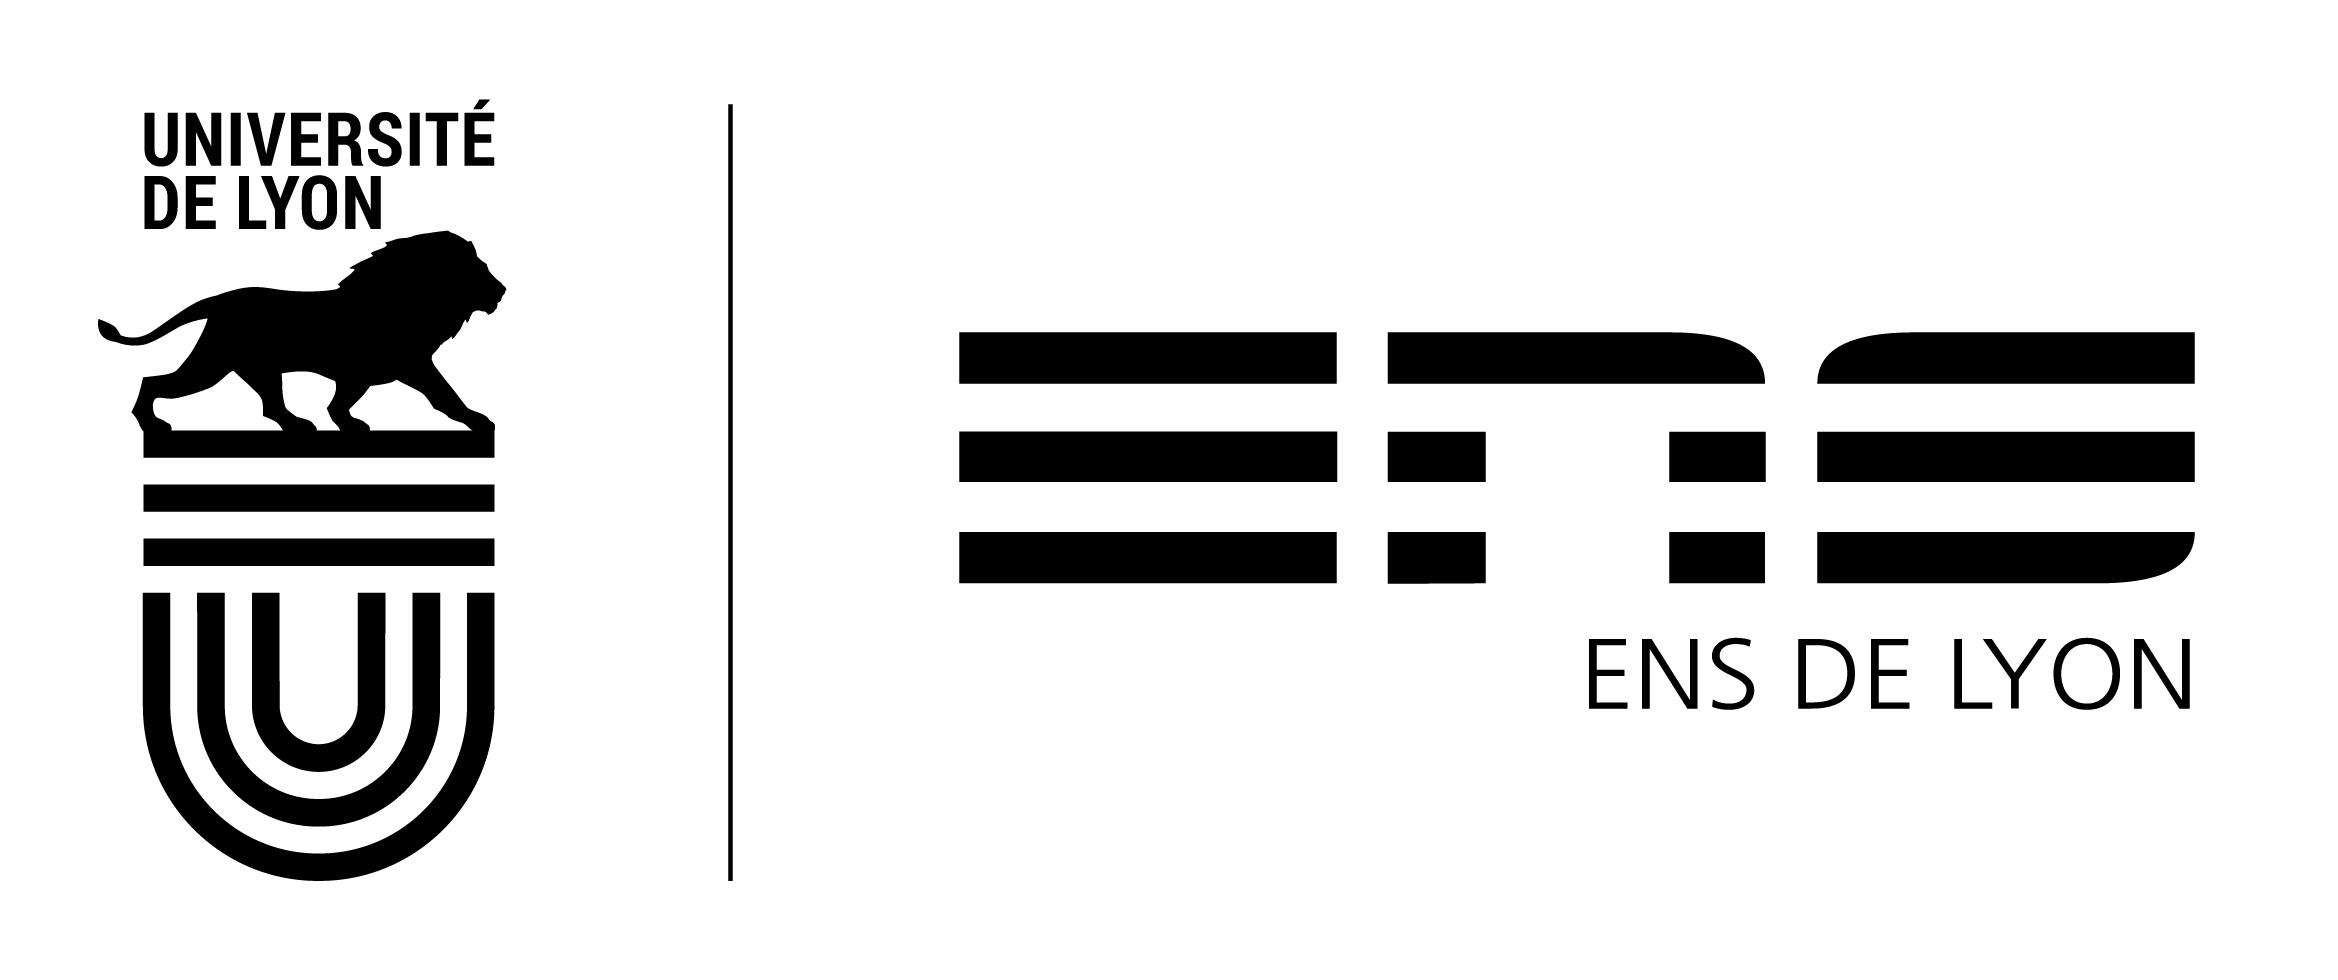 Logo ENS de Lyon